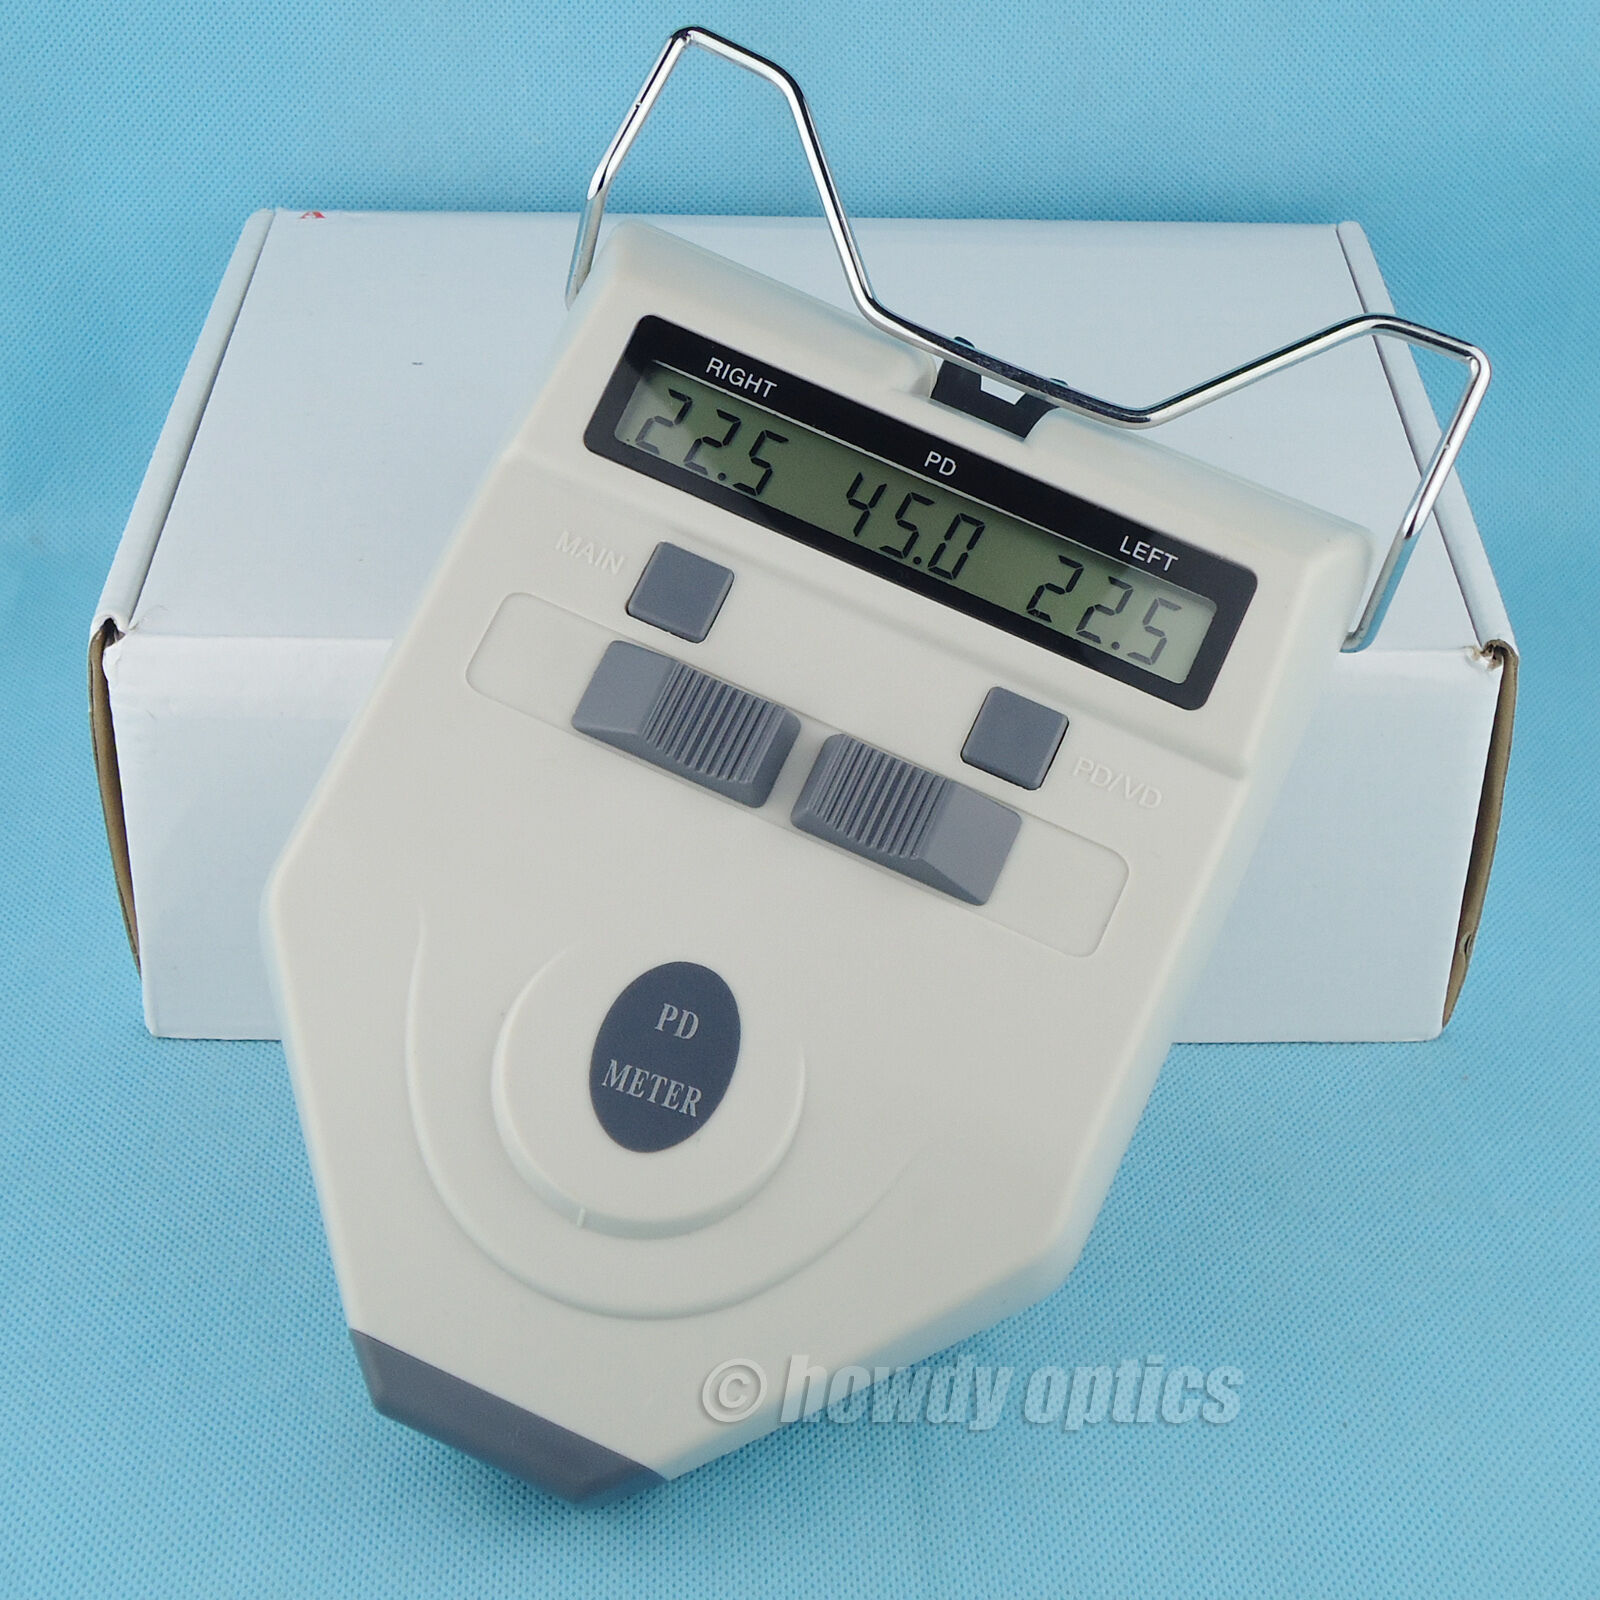 Optical Pd Meter Digital Pupilometer New Type